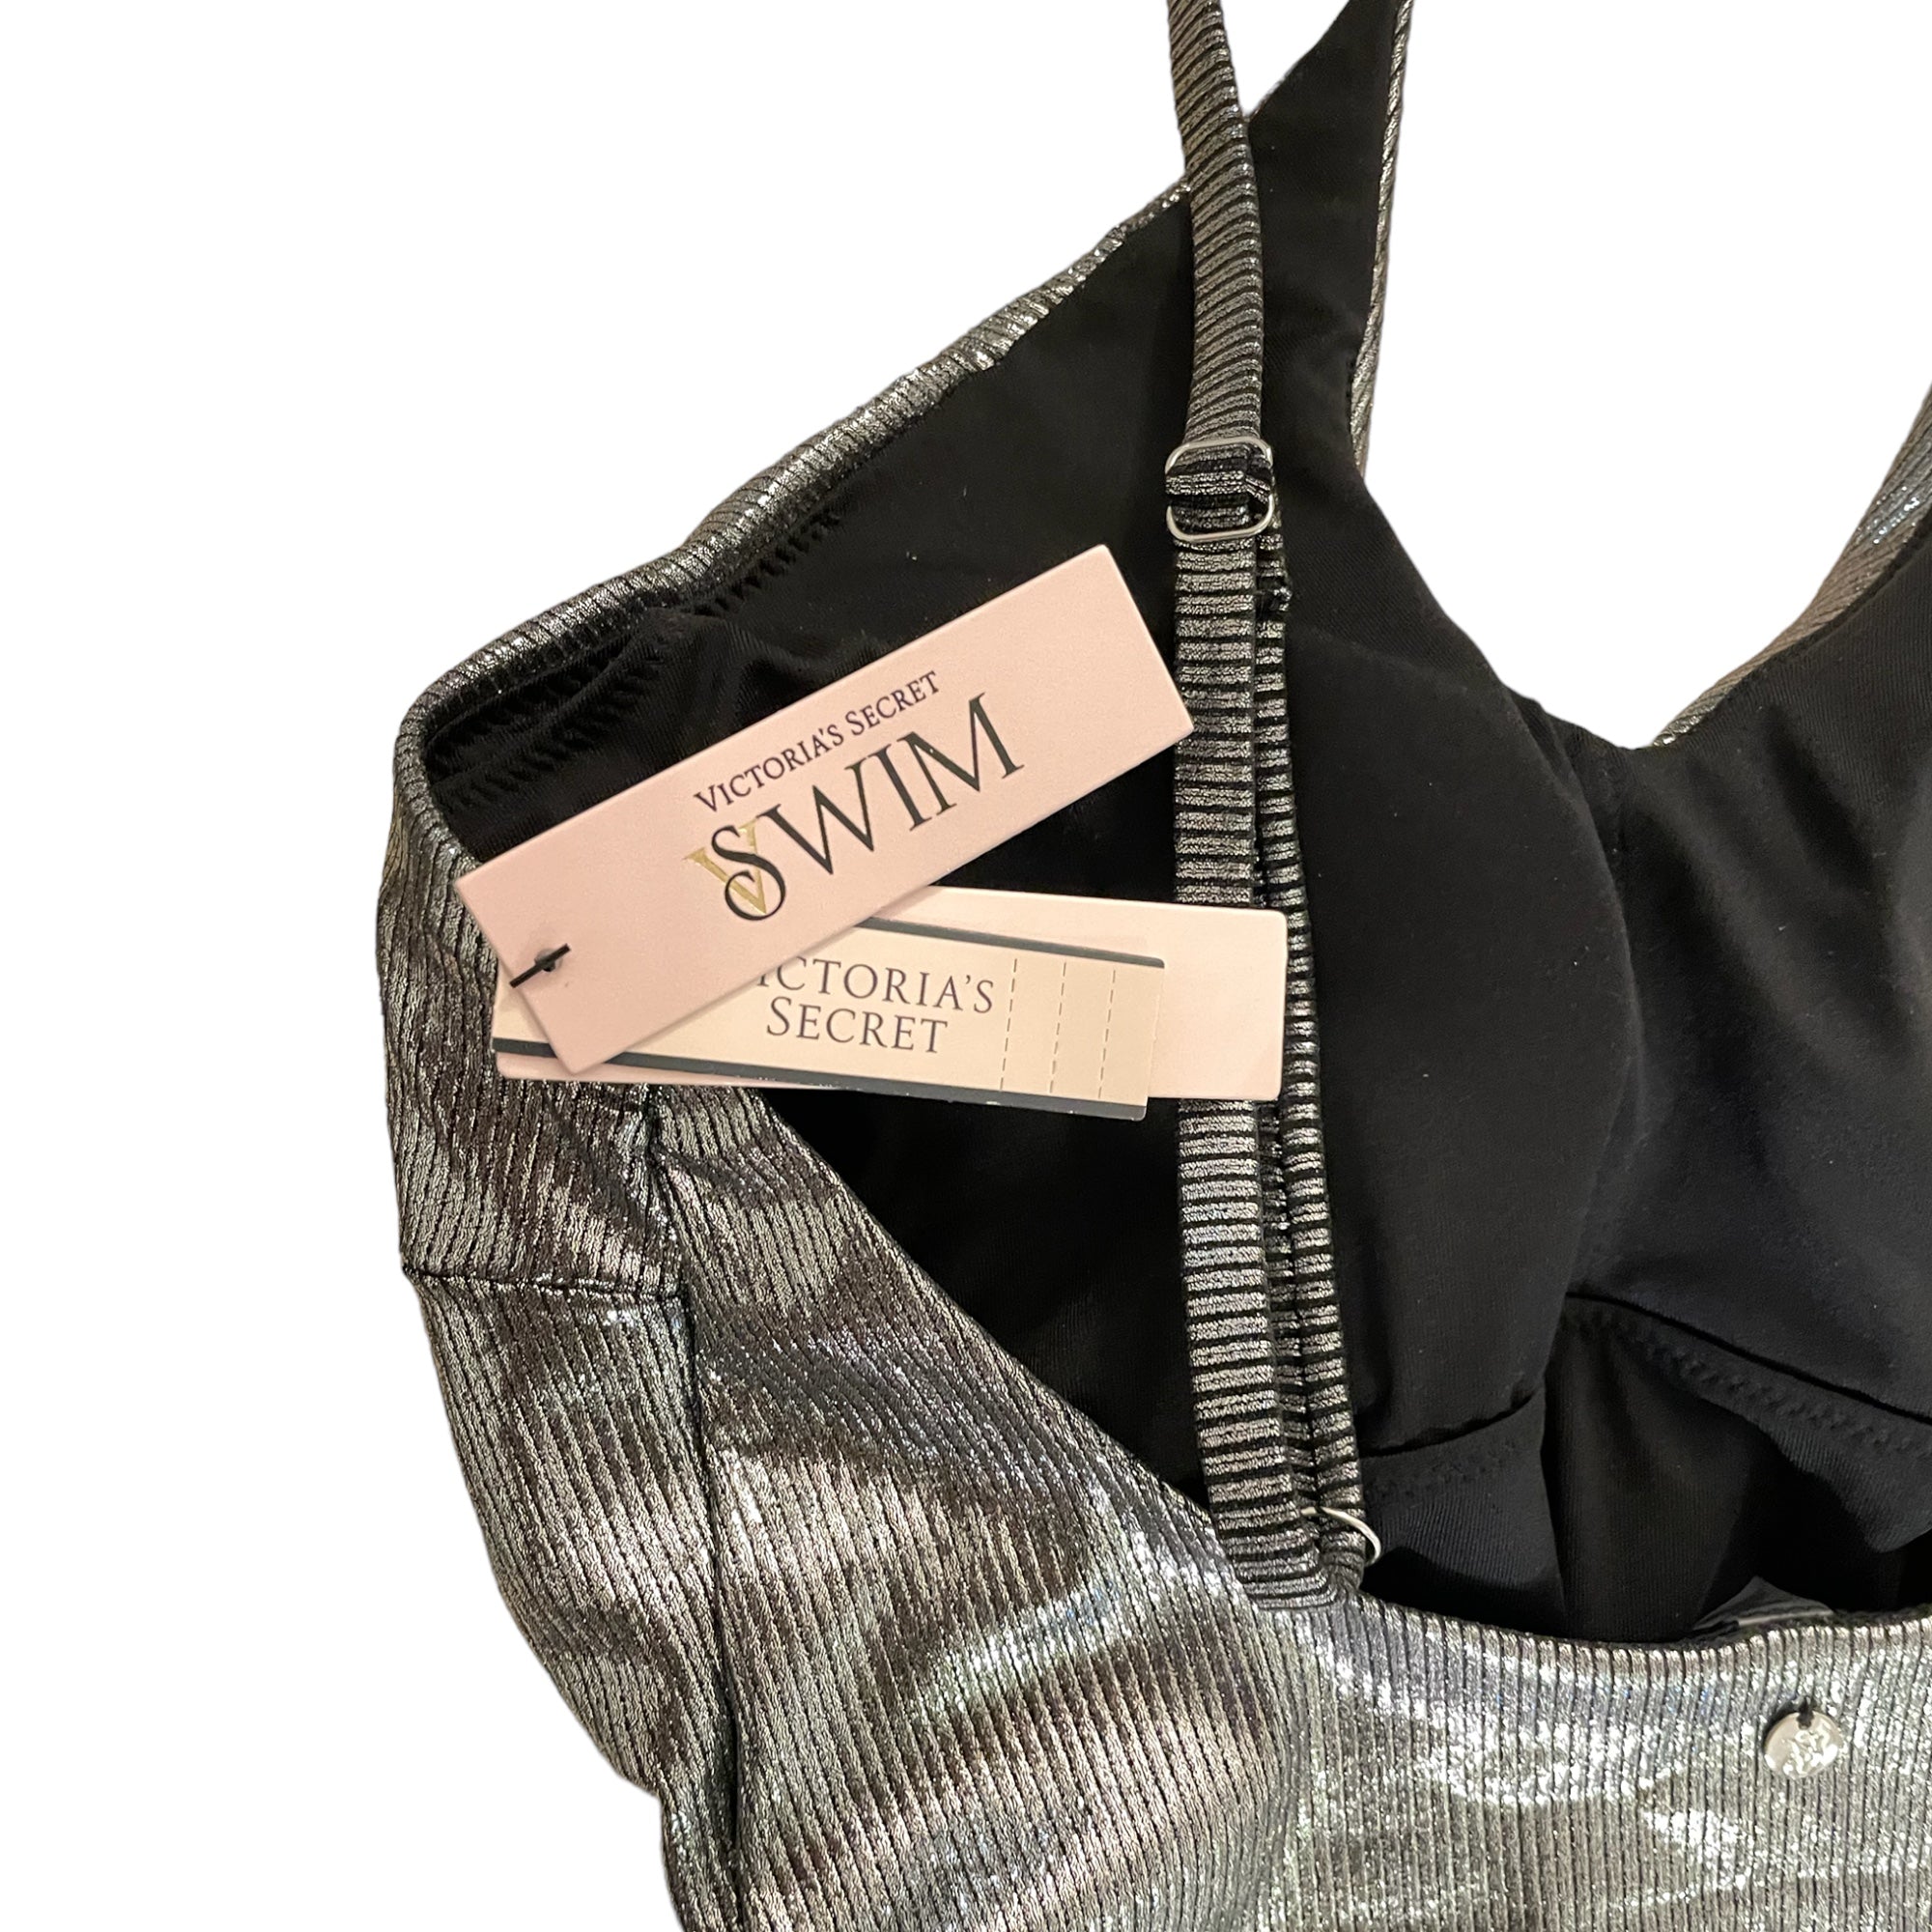 VICTORIA'S SECRET SWIM Cutout One-Shoulder One-Piece Swimsuit  SIZE: |M|